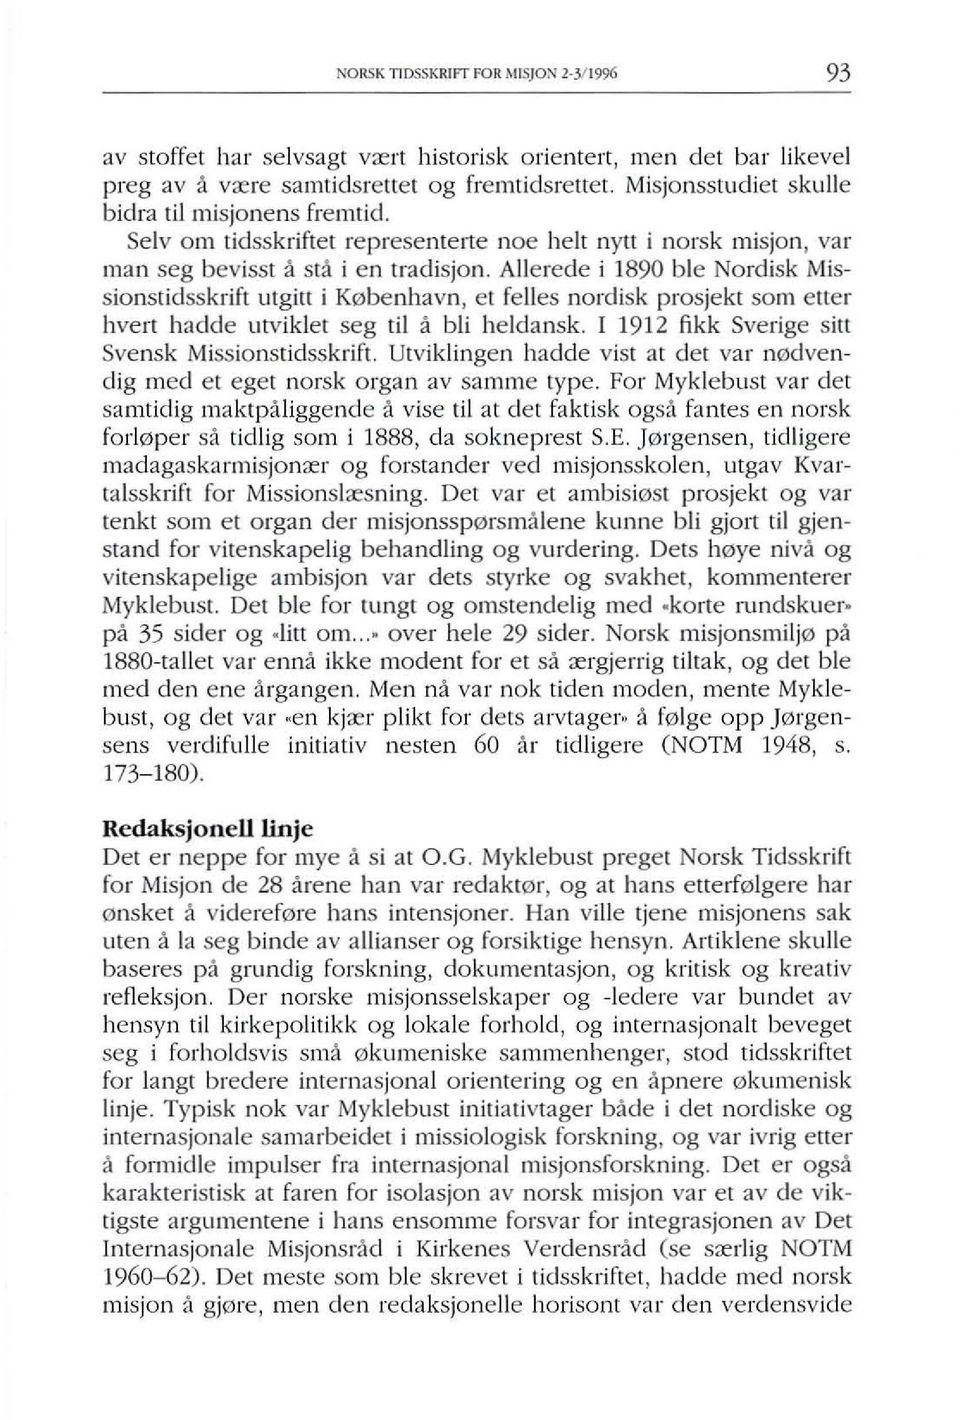 Allerede i 1890 ble Nordisk Missionstidsskrift utgirt i K0benhavn, el felles nordisk prosjekt som elter Iwert hadde utviklel seg til a bli heldansk. [ 1912 fikk Sverige sirt Svensk Missionstidsskrift.